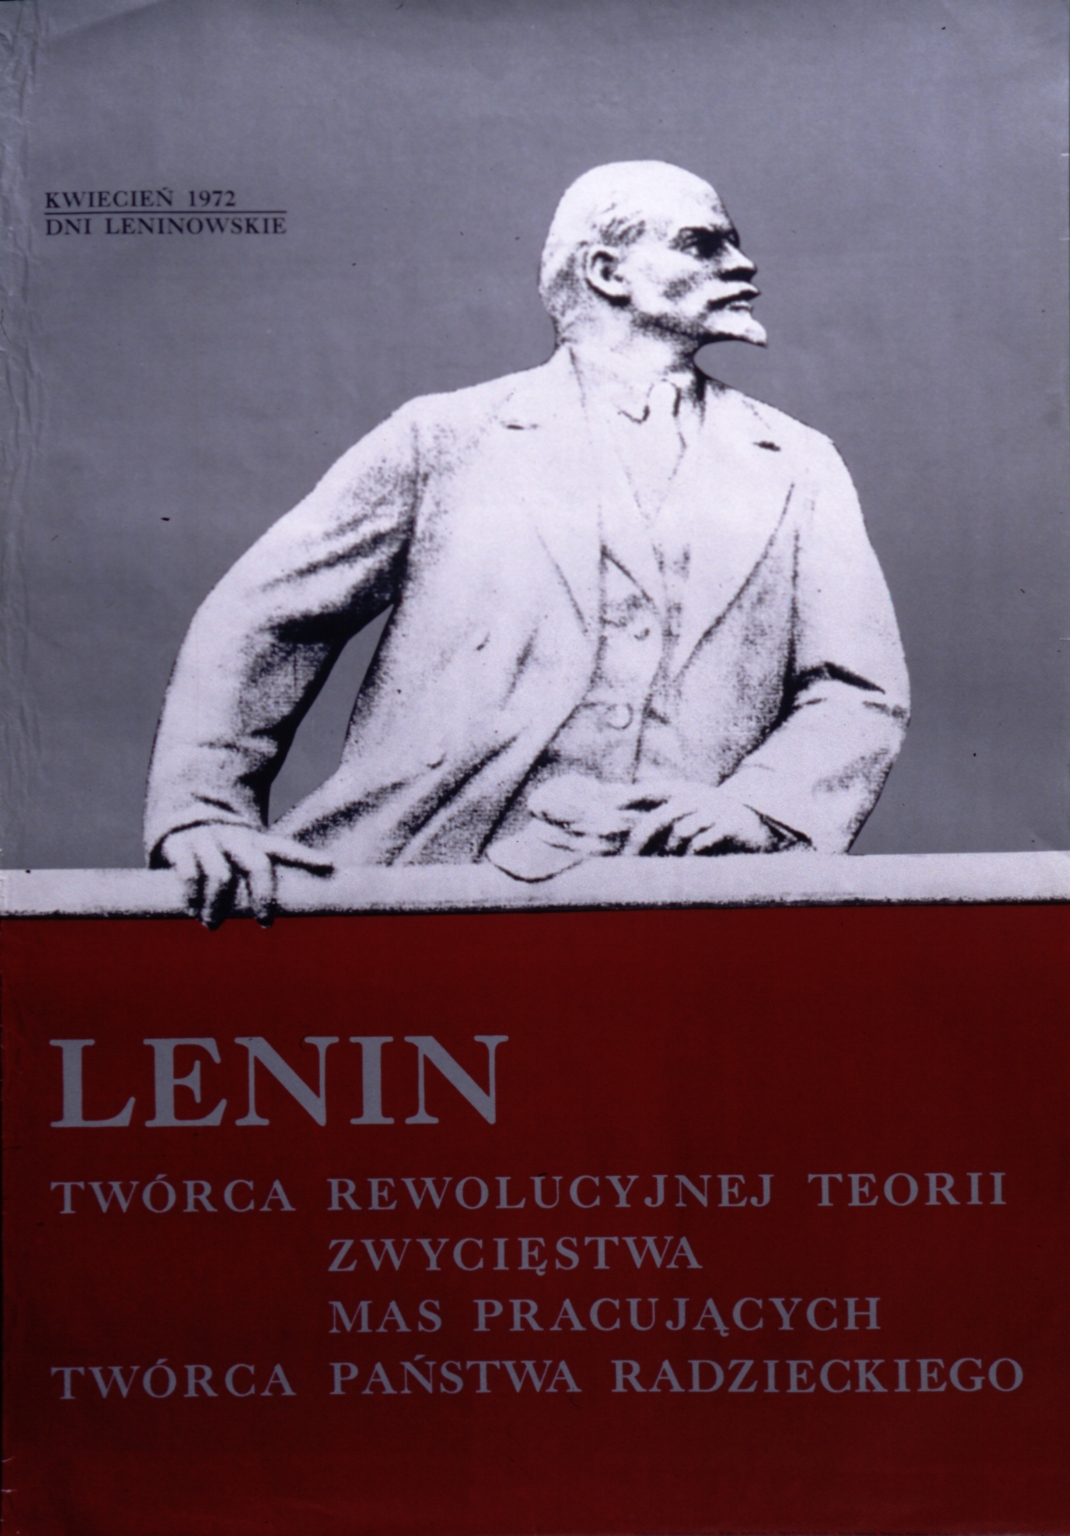 Lenin: tworca rewolucyjnej teorii zwyciestwa mas pracujacych, tworca panstwa radzieckiego